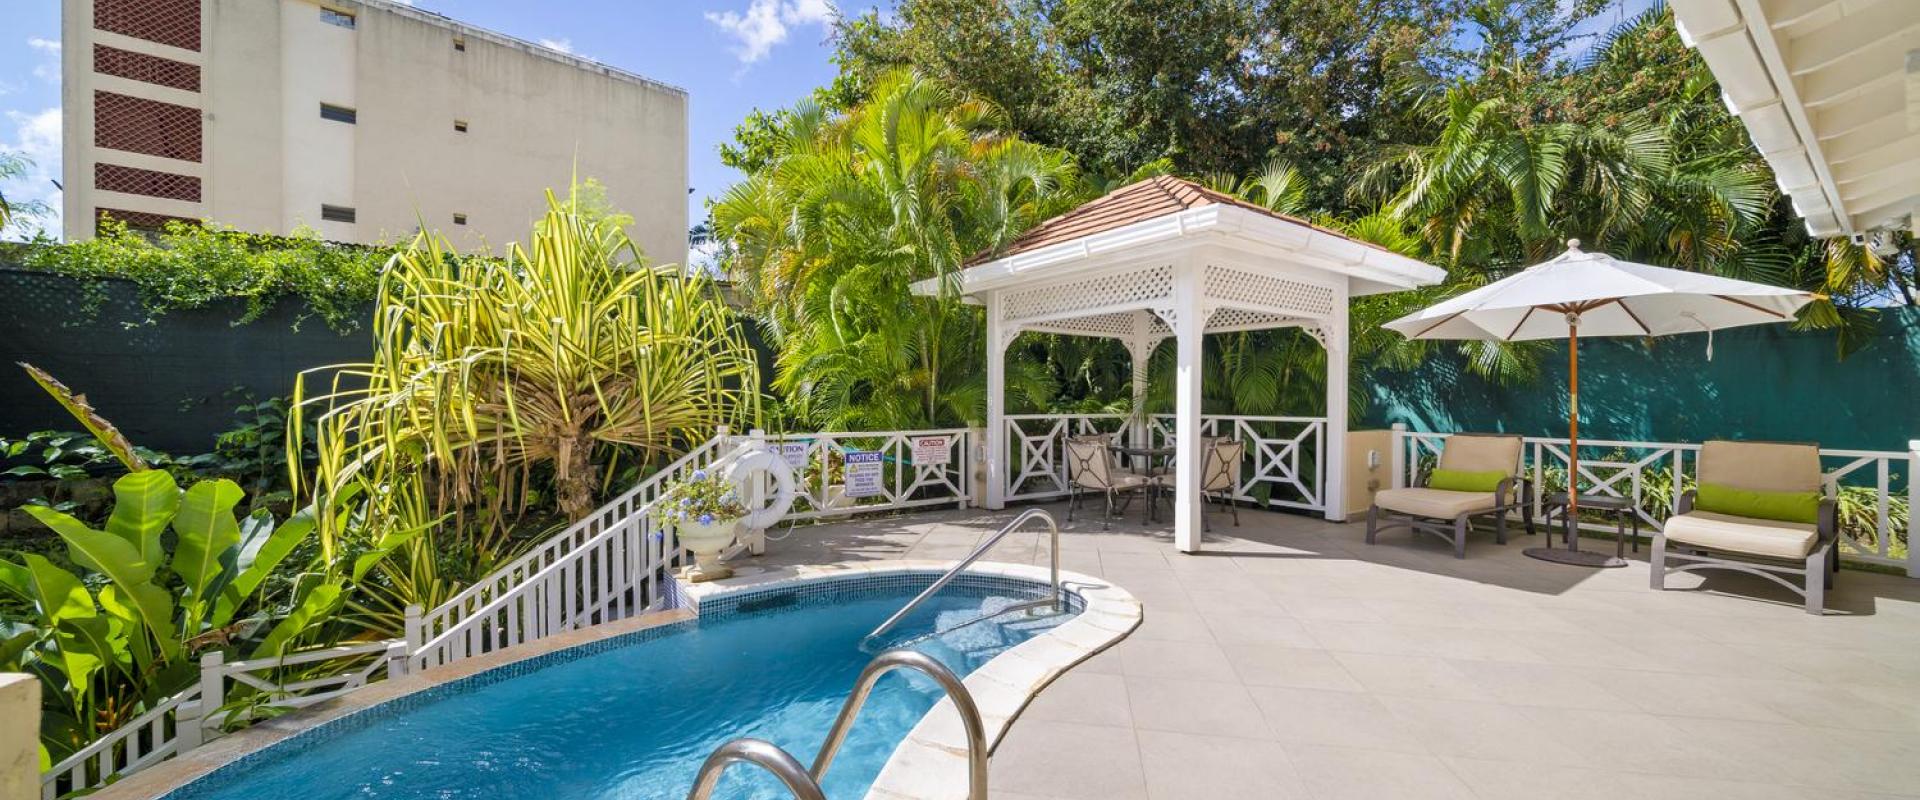 Tara Barbados 4 Bedroom Holiday Rental Villa Pool Deck